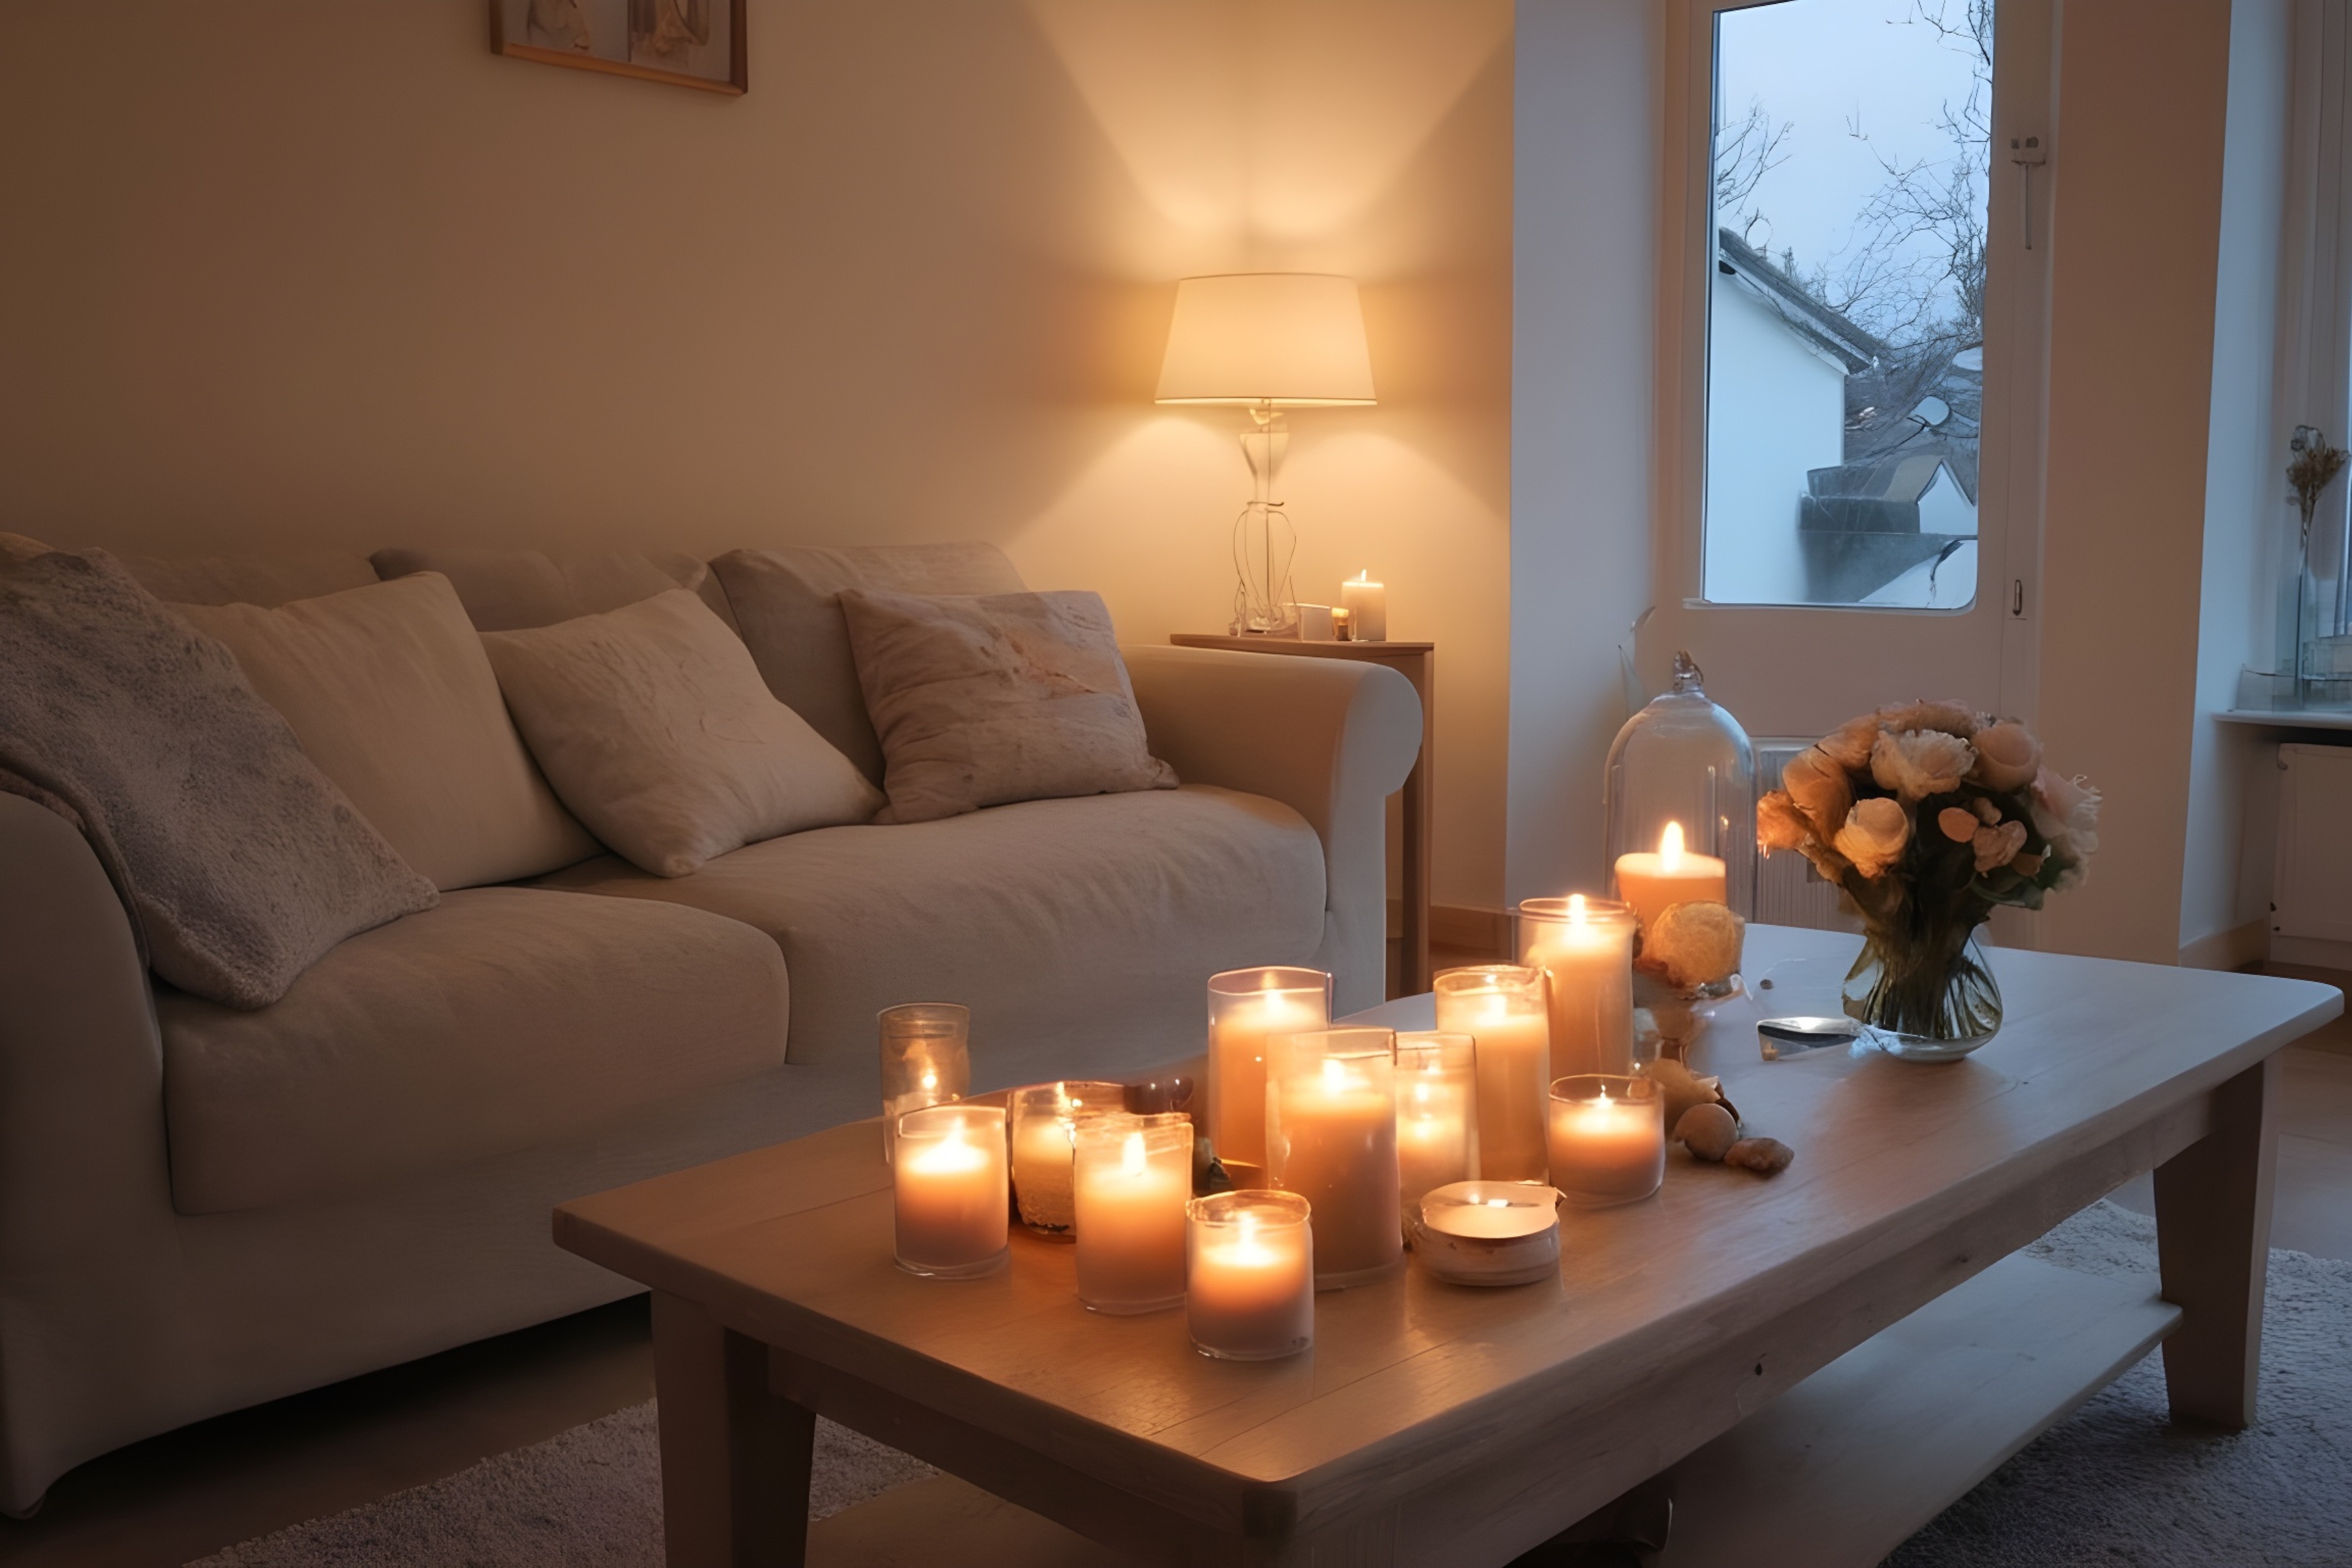 Hangulatos nappali lágy fényű lámpákkal és gyertyákkal, megteremtve a tökéletes romantikus atmoszférát.